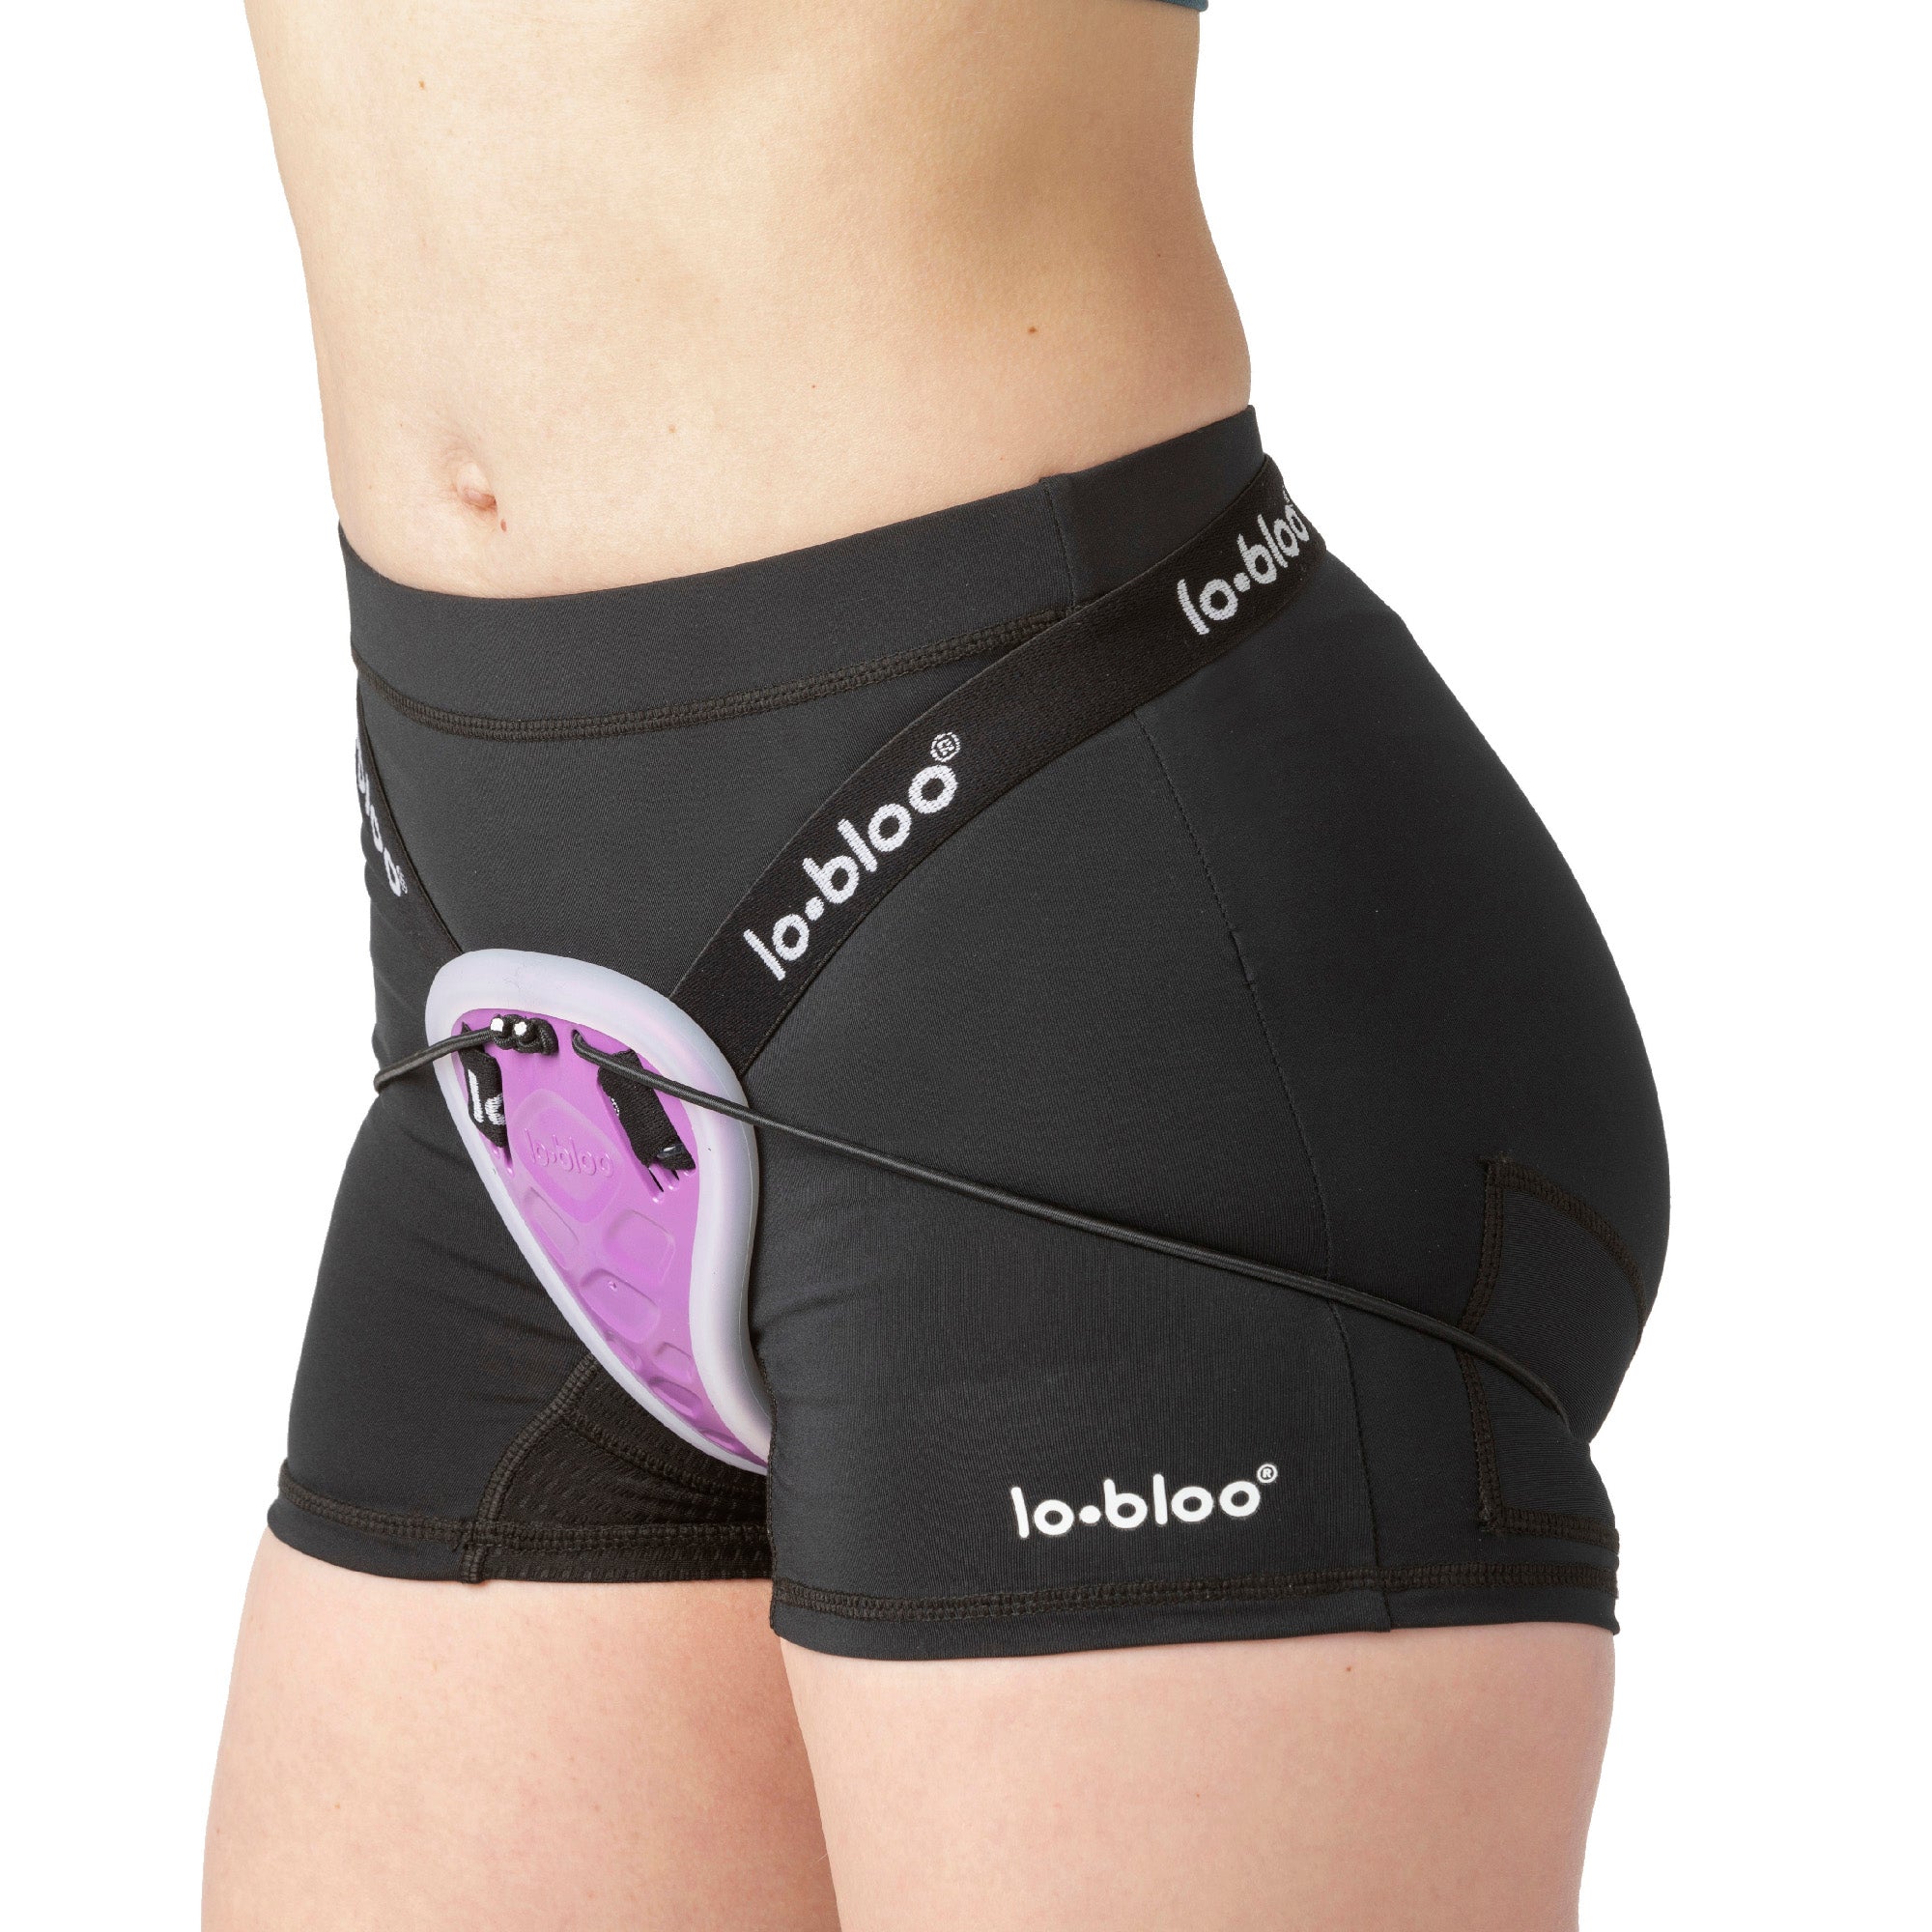 lobloo® support underwear, women, adult, (black), sizes XS-XL